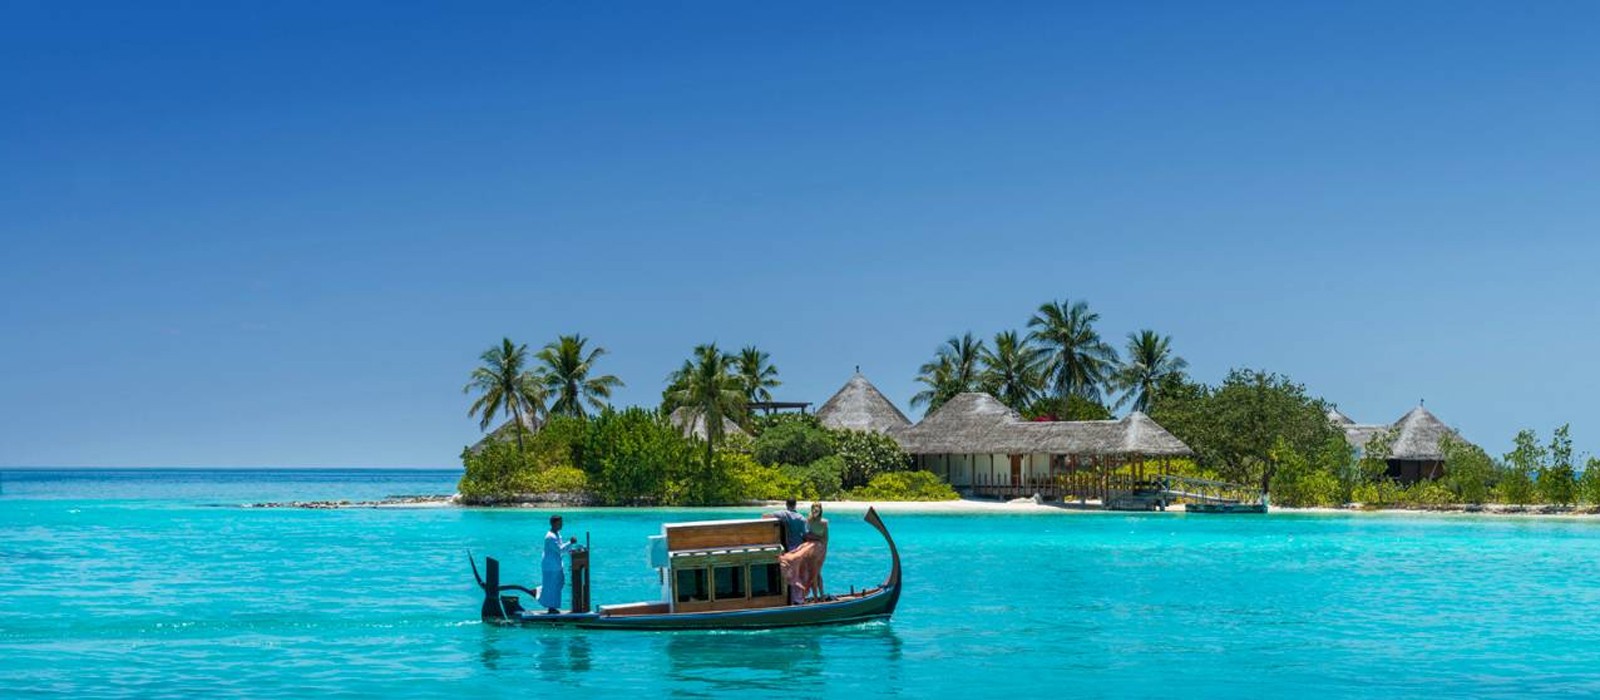 PD Header - Four Seasons Maldives - Maldives Holiday Packages - Thumbnail